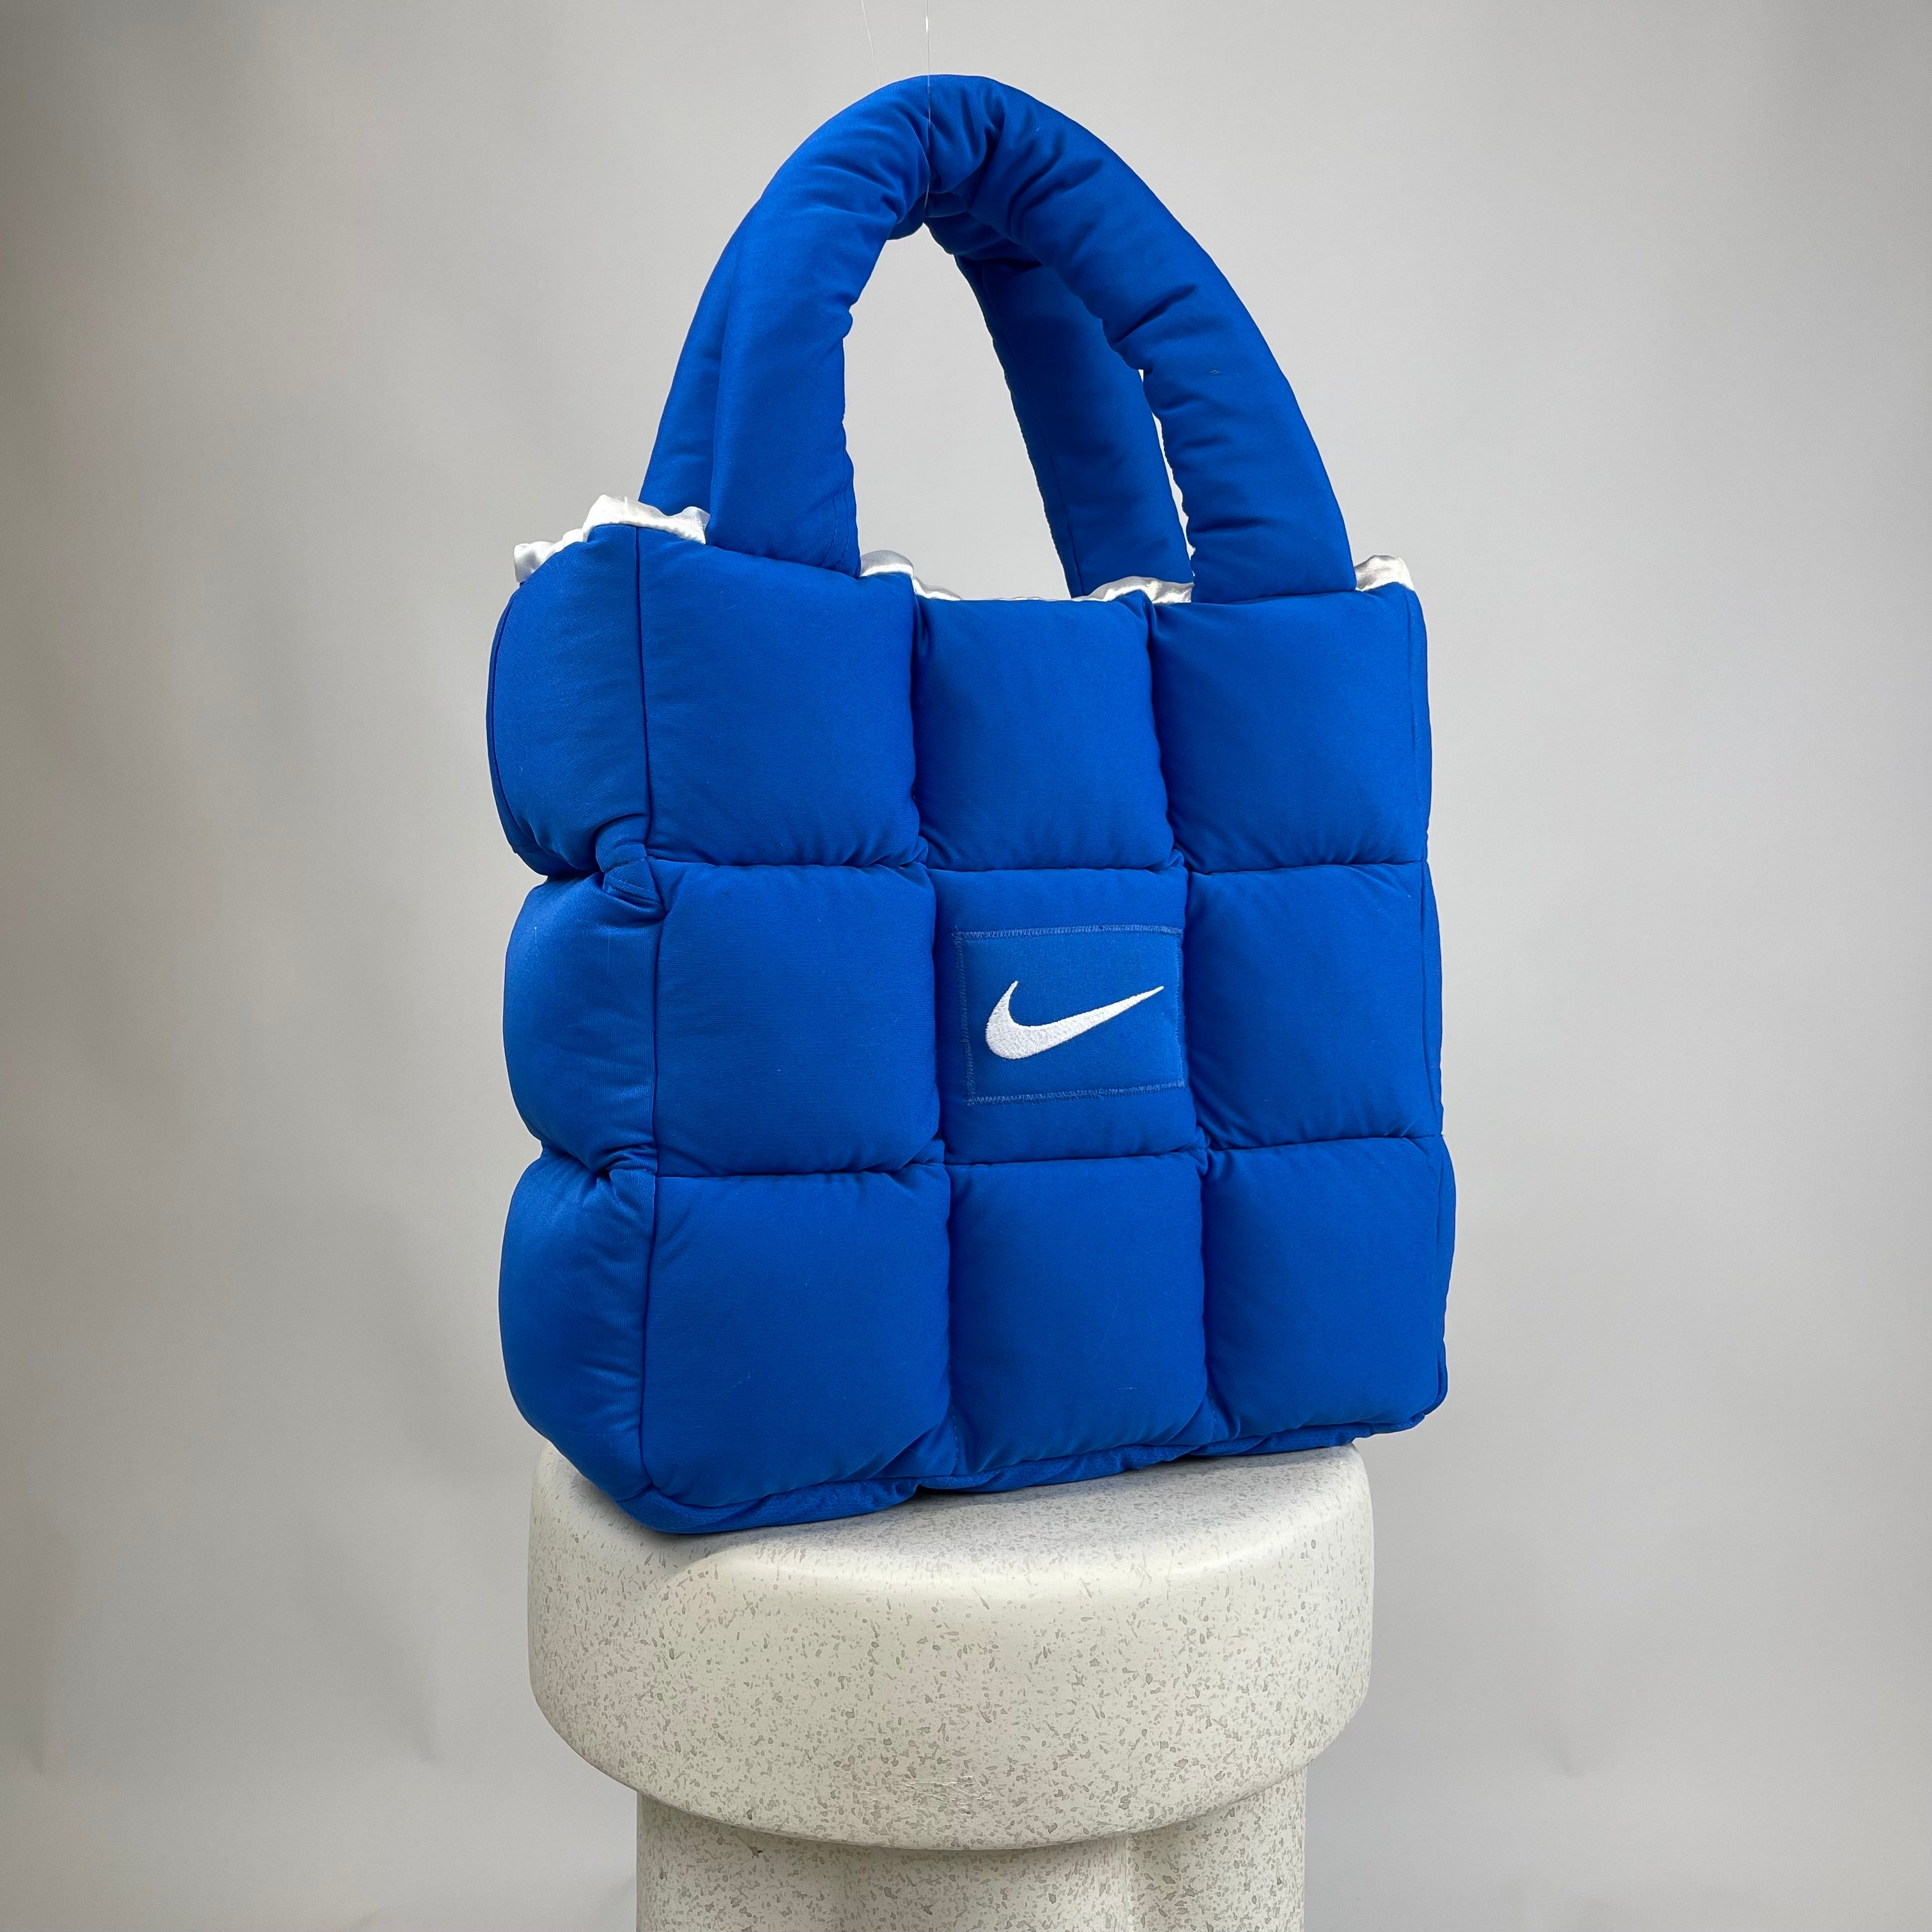 Boss Up Blue Puffer Bag